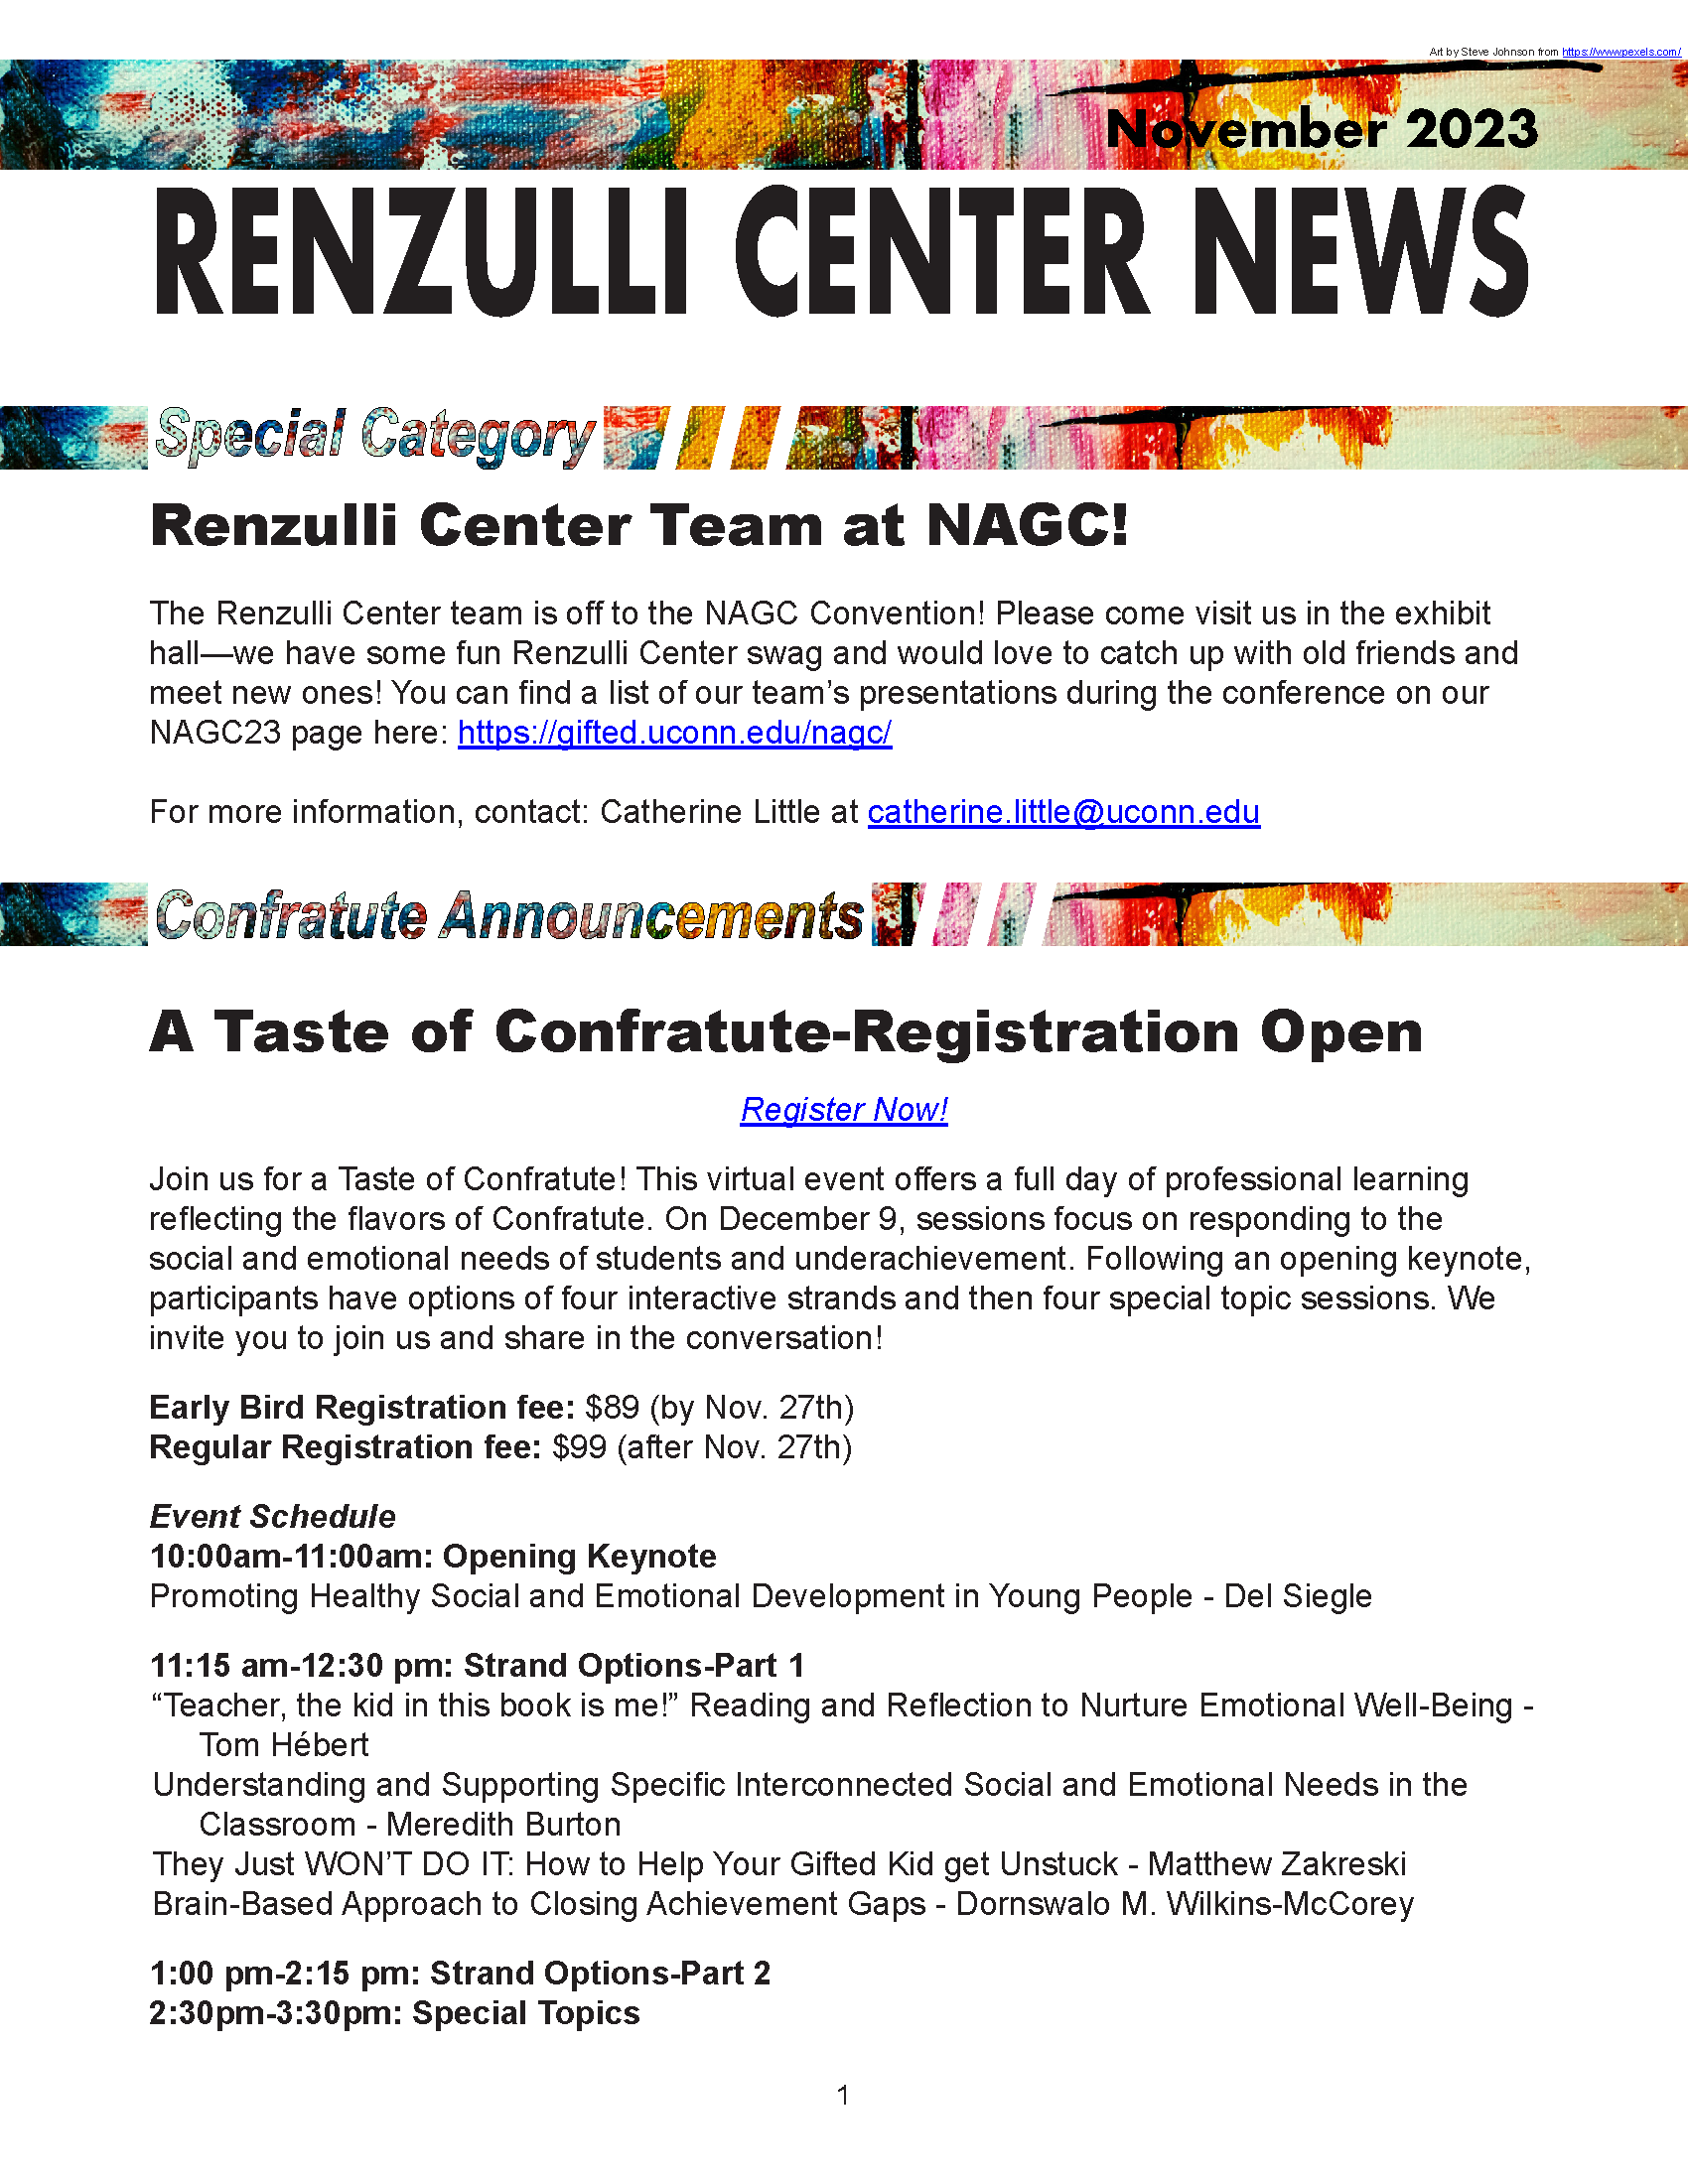 November 2023 Renzulli News Cover Graphic